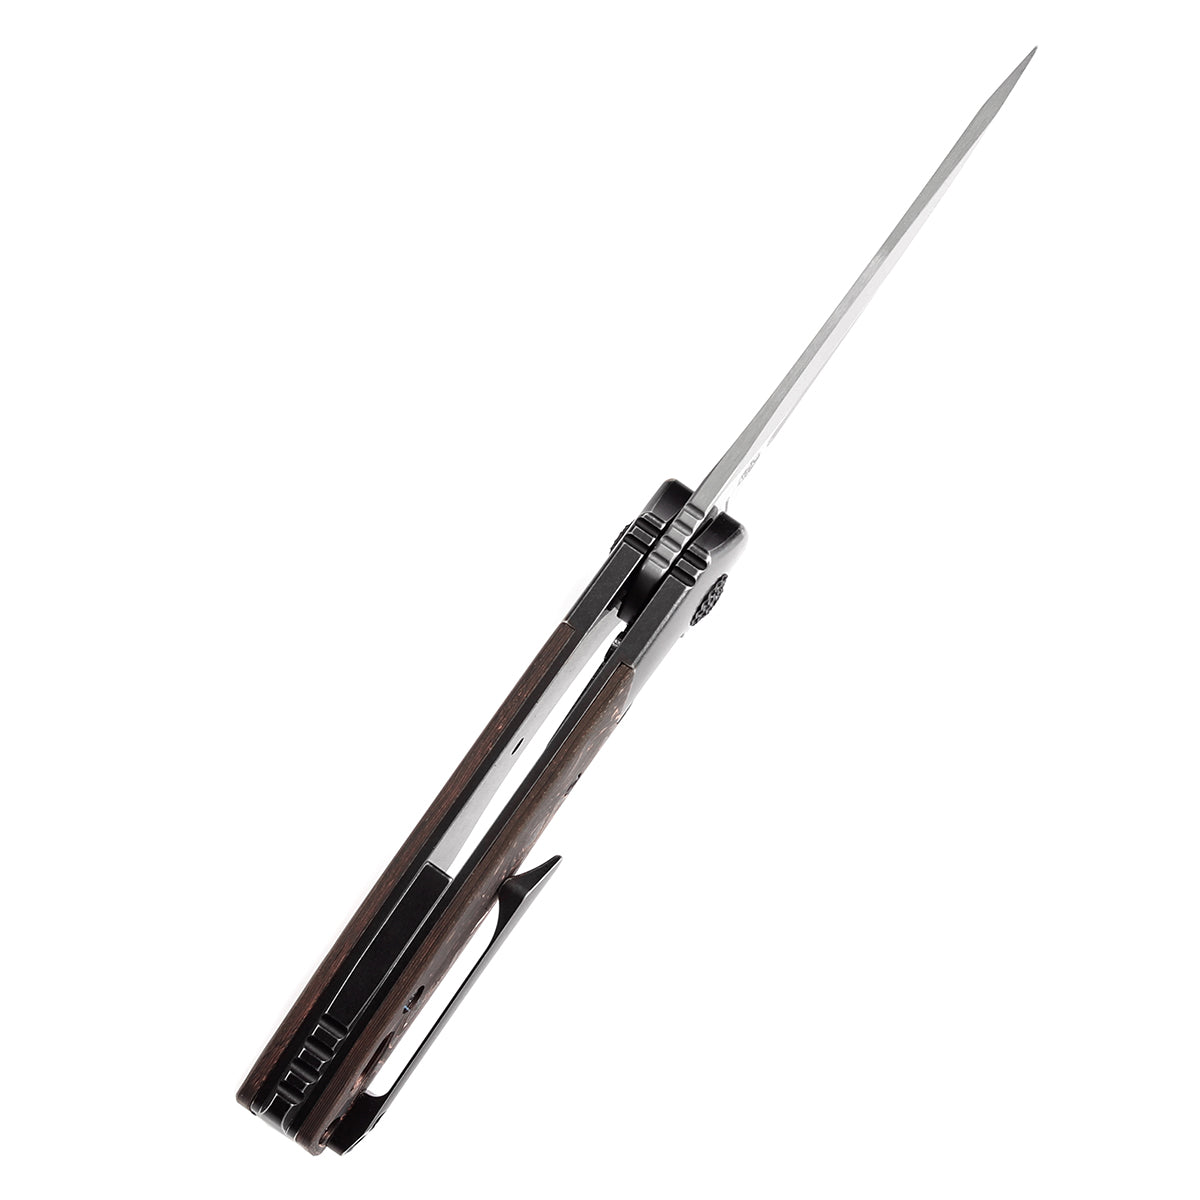 Kansept Cassowary K2065B5 Damascus Blade Copper Carbon Fiber Handle Edc Flipper Knife